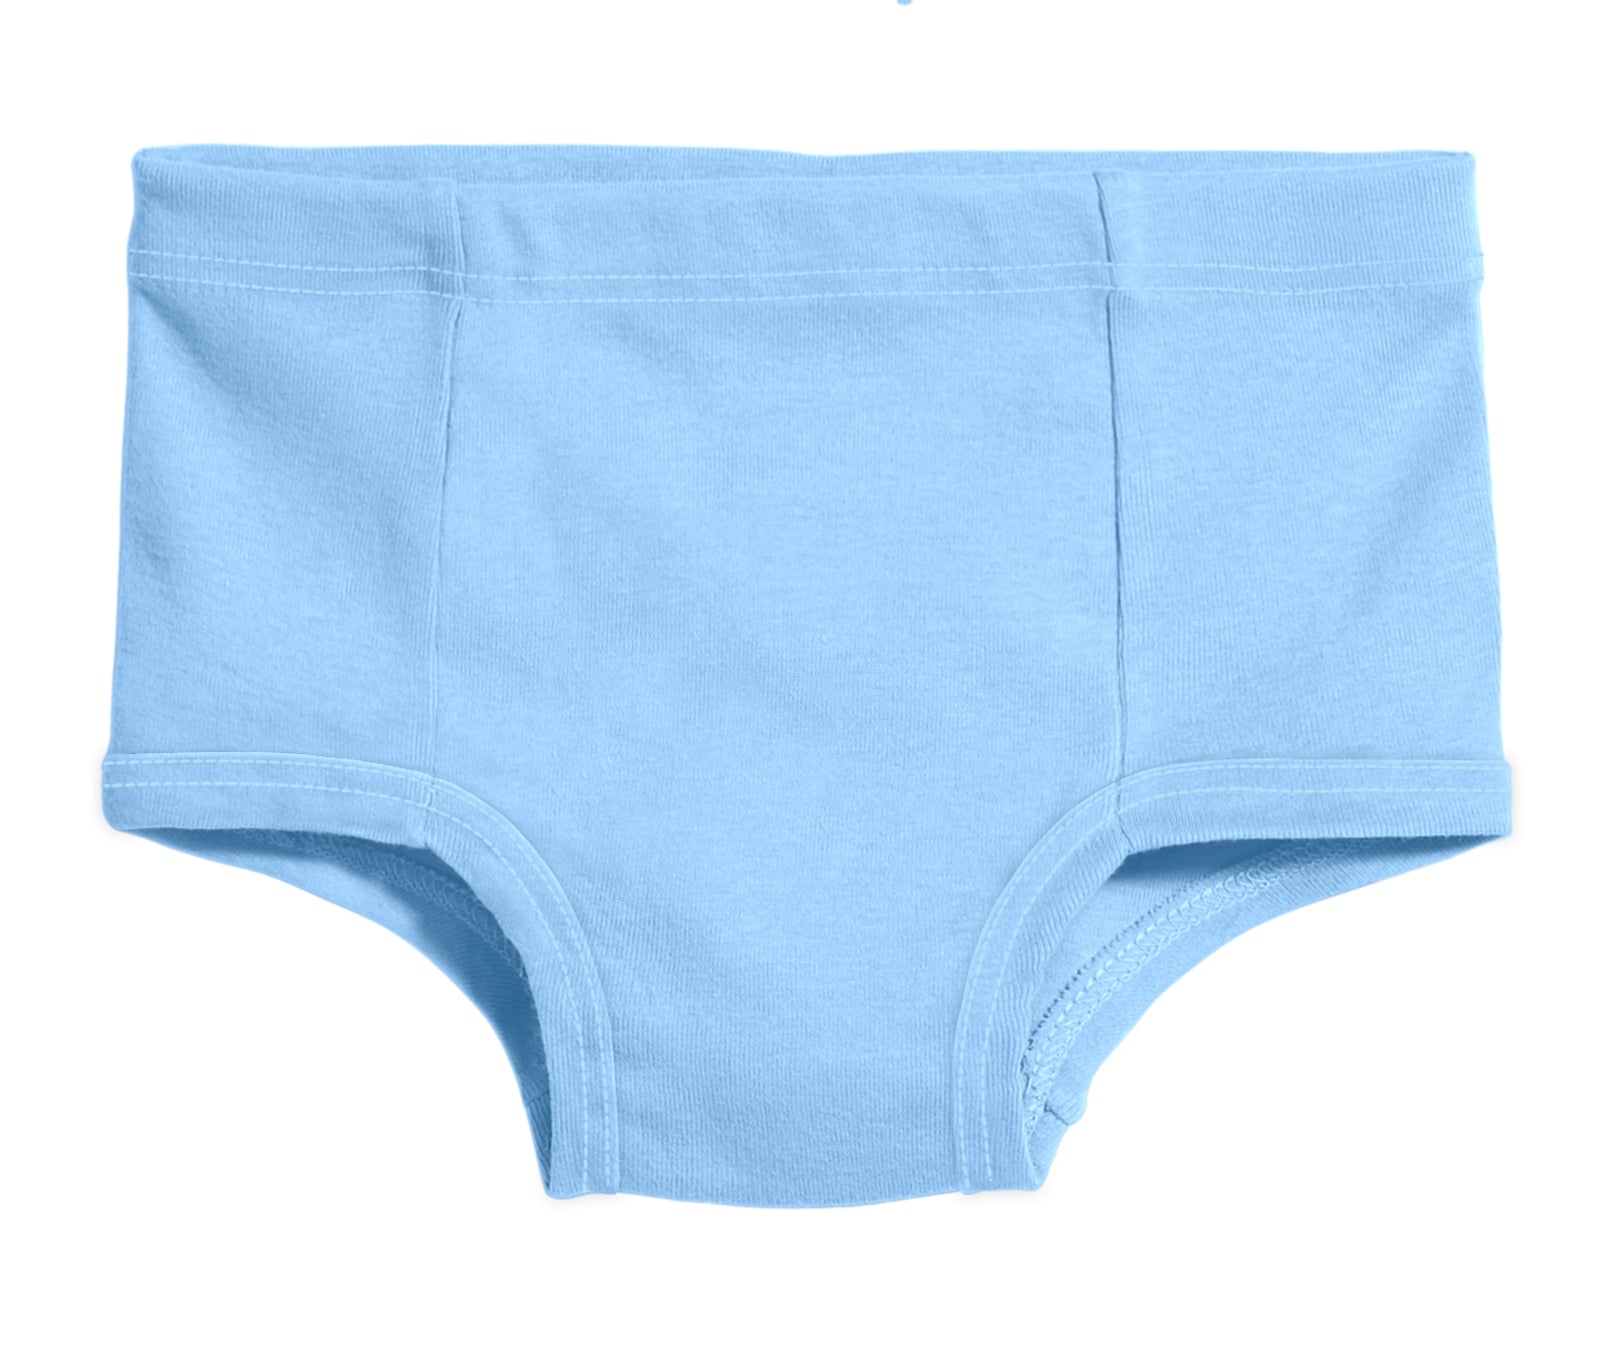 Quality Unisex Underwear